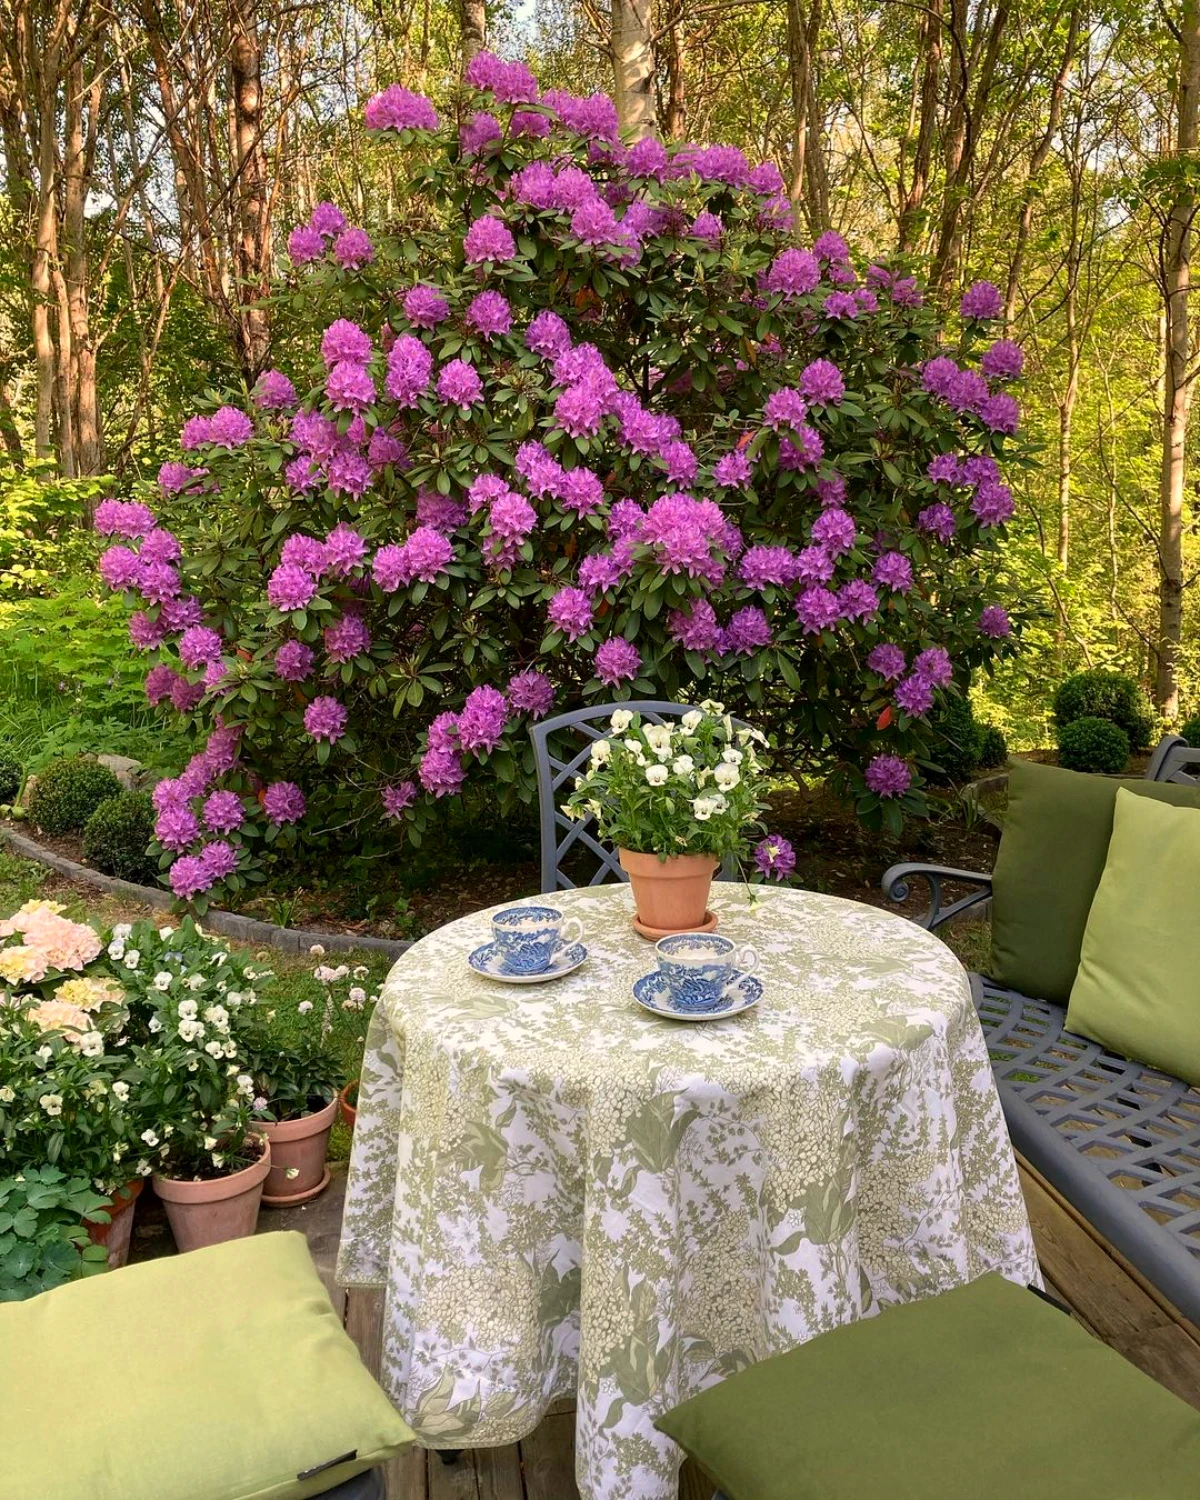 rhododendron arbuste brise vue fleurs roses table en metal deux chaise jardin